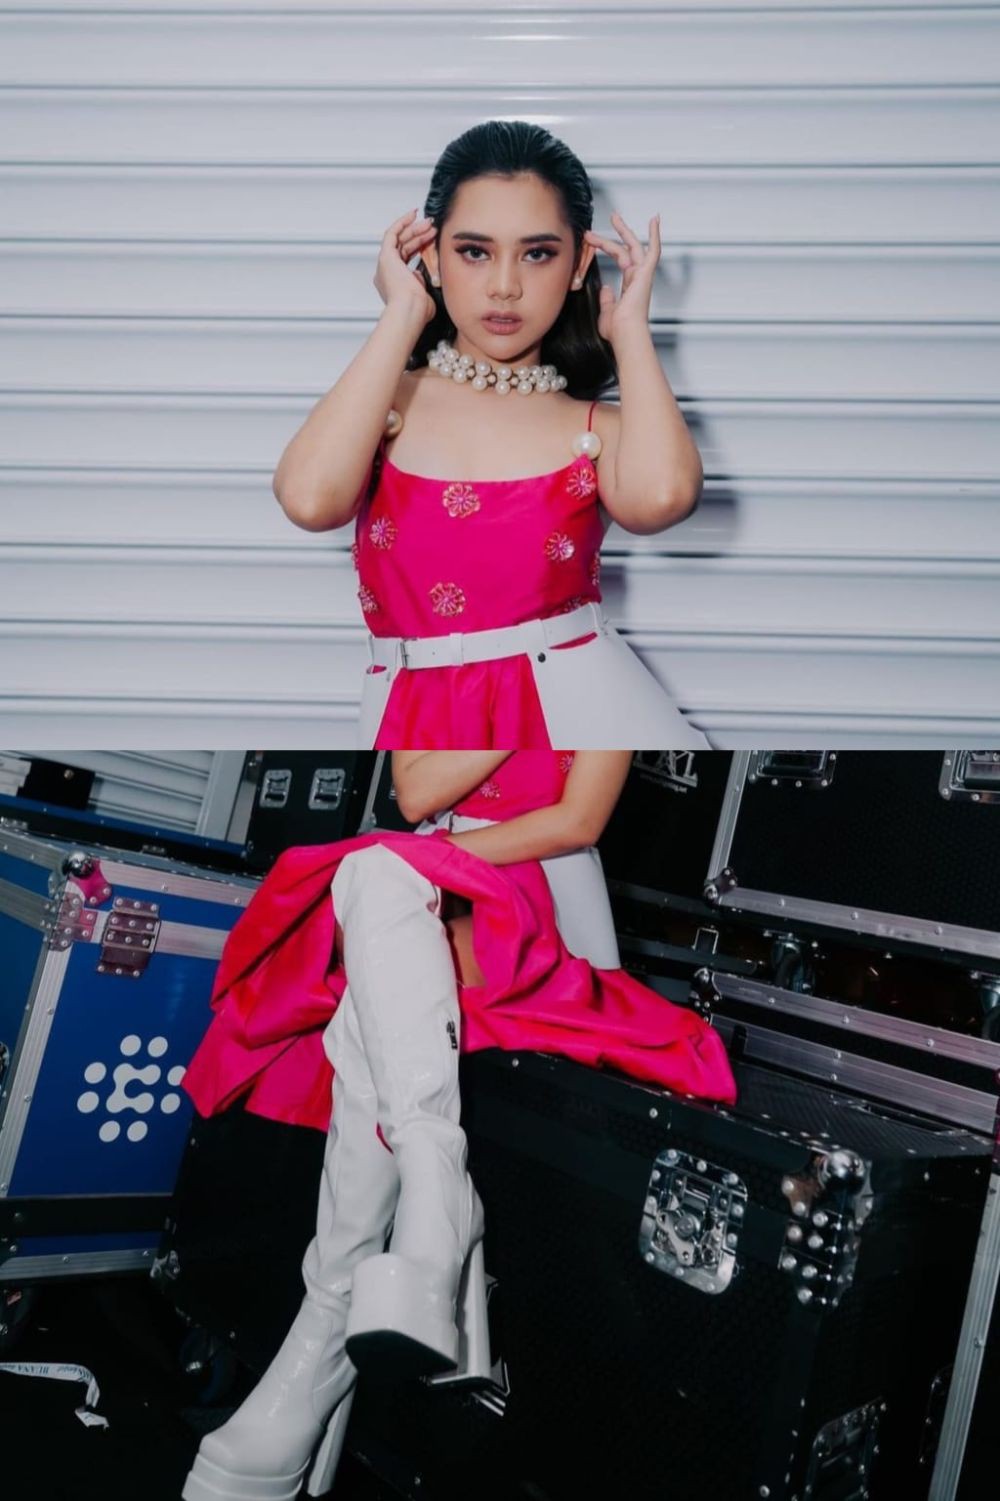 Inspirasi Outfit Look Barbie Dipakai Artis Indonesia, Gemas!